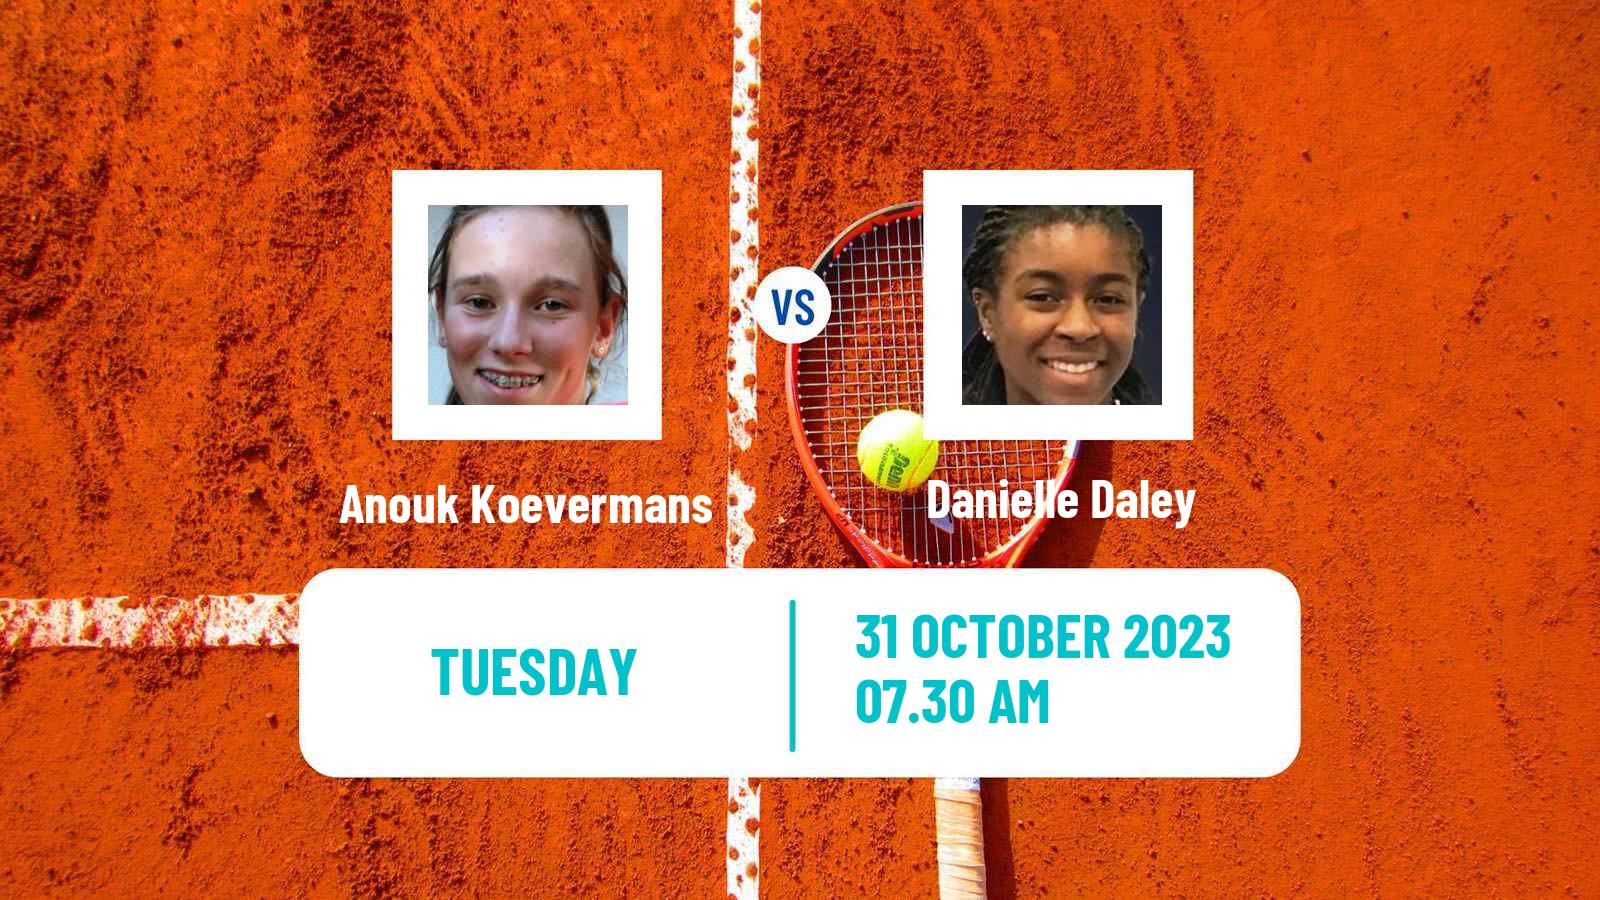 Tennis ITF W25 Sunderland Women Anouk Koevermans - Danielle Daley